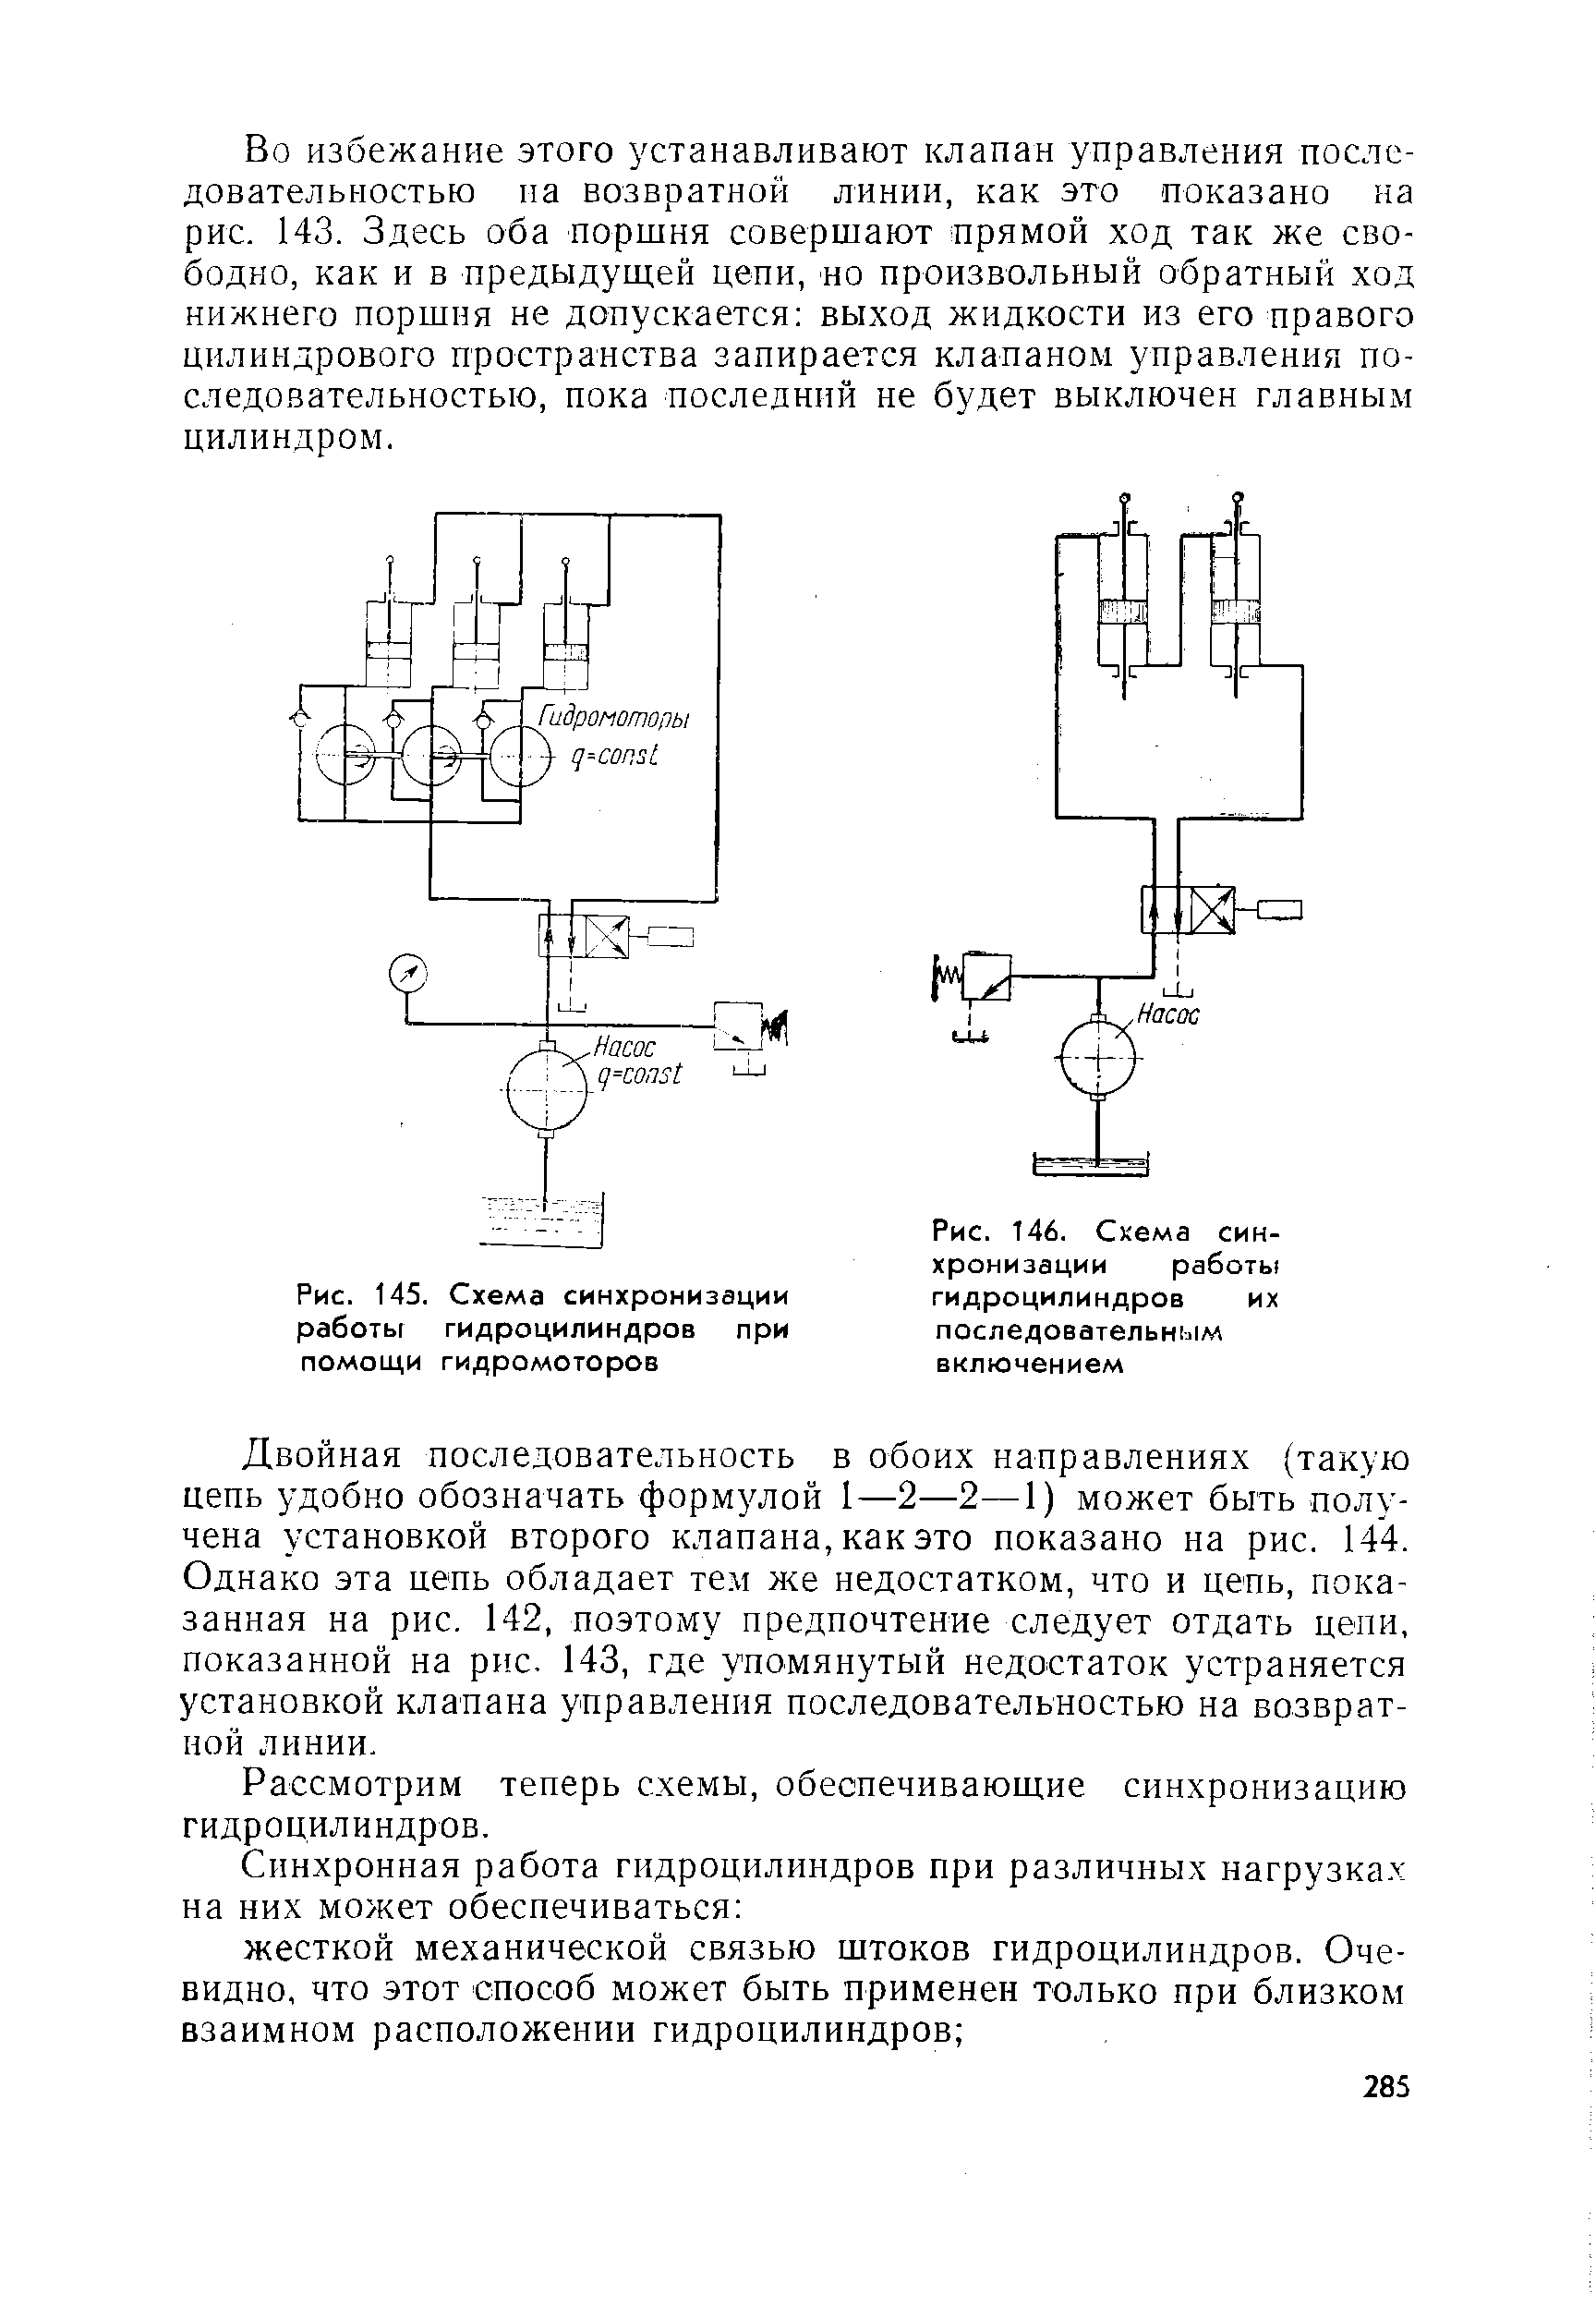 Рис. 145. Схема синхронизации работы гидроцилиндров при помощи гидромоторов
